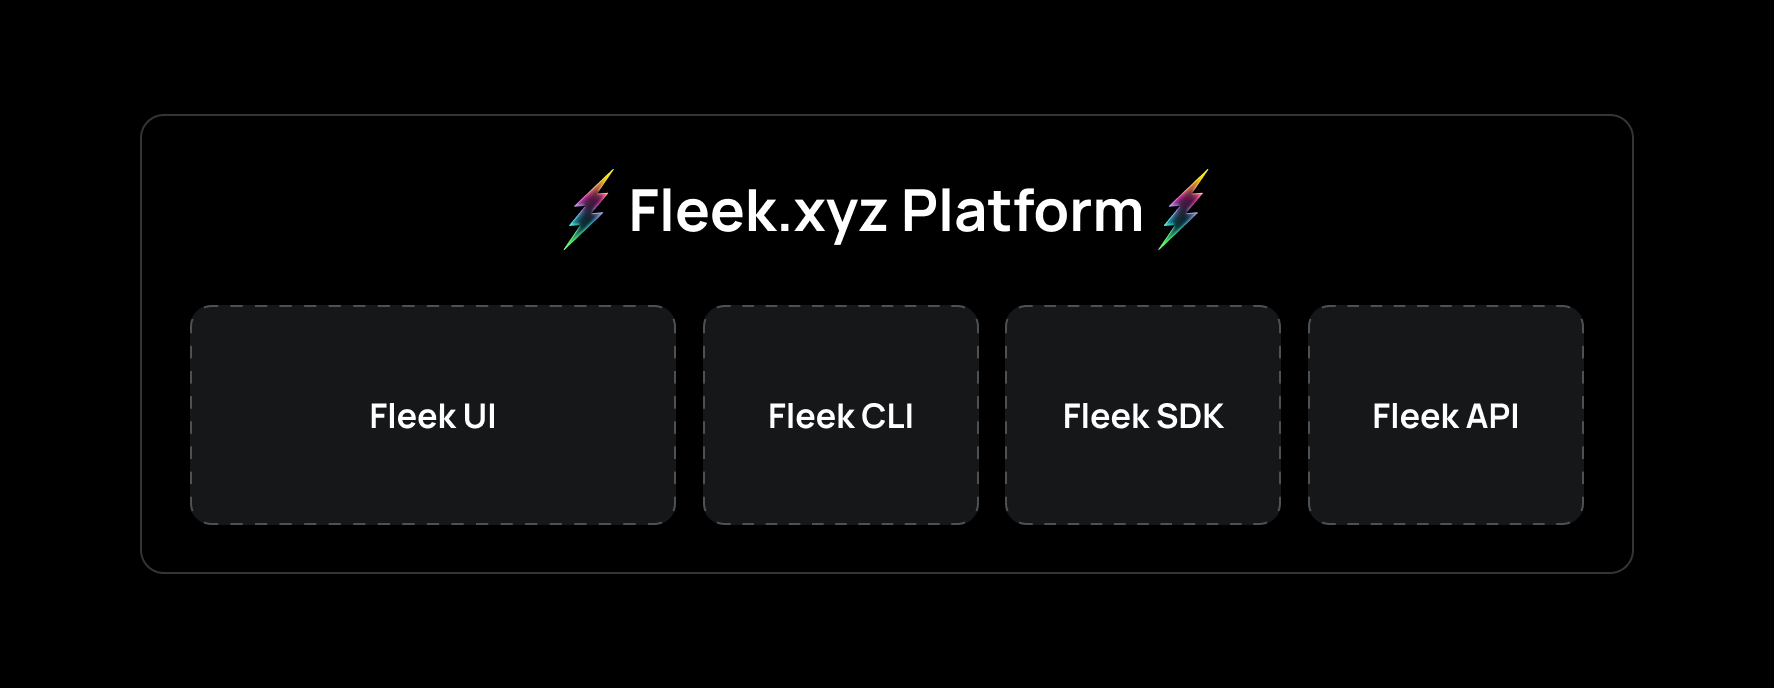 Fleek.xyz Platform types